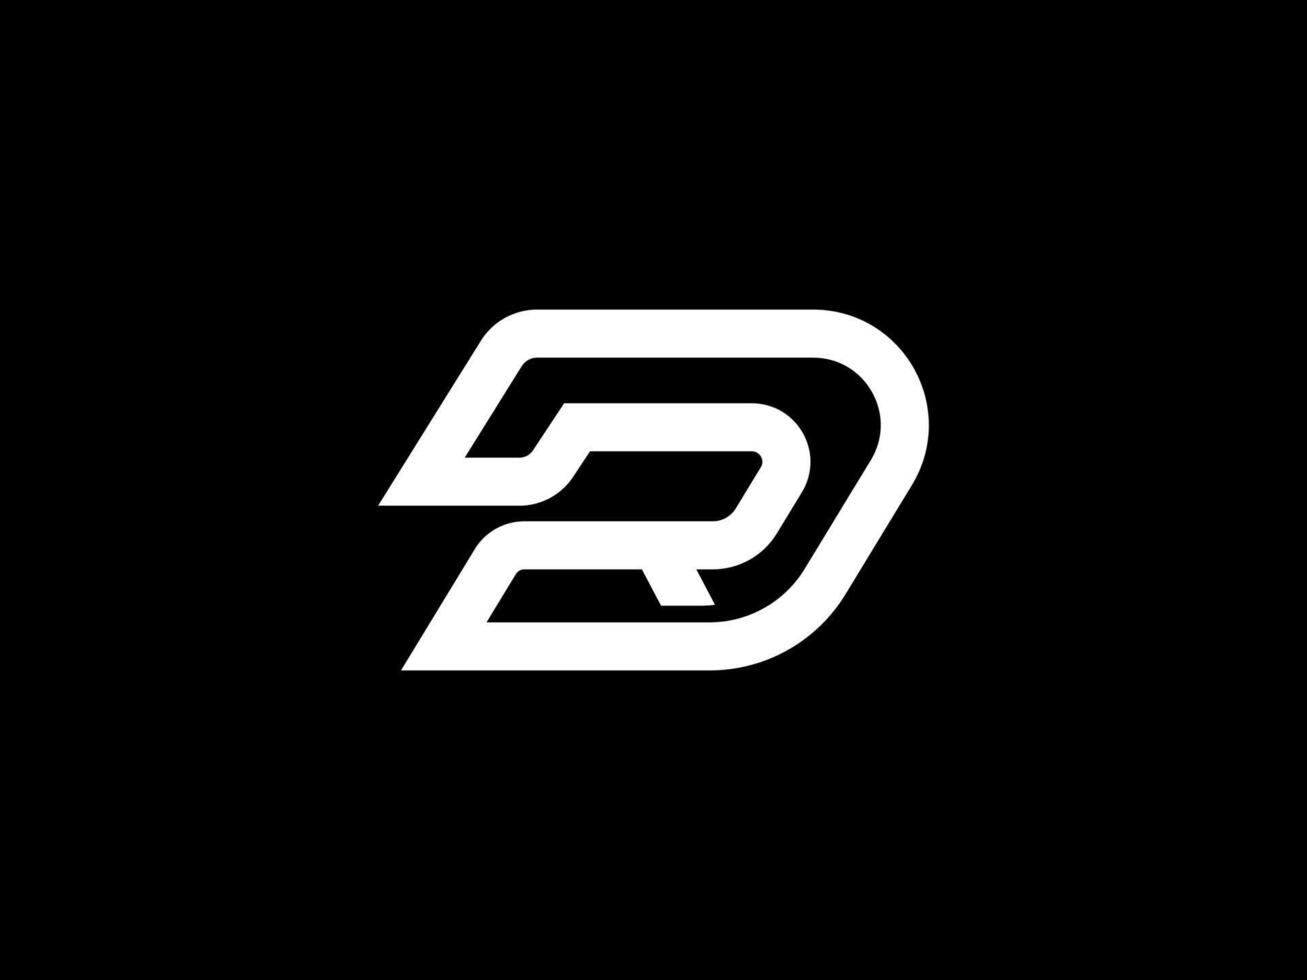 dr iniziale lettera, rd monogramma, per logo azienda e icona attività commerciale, con isolato nero sfondo. vettore